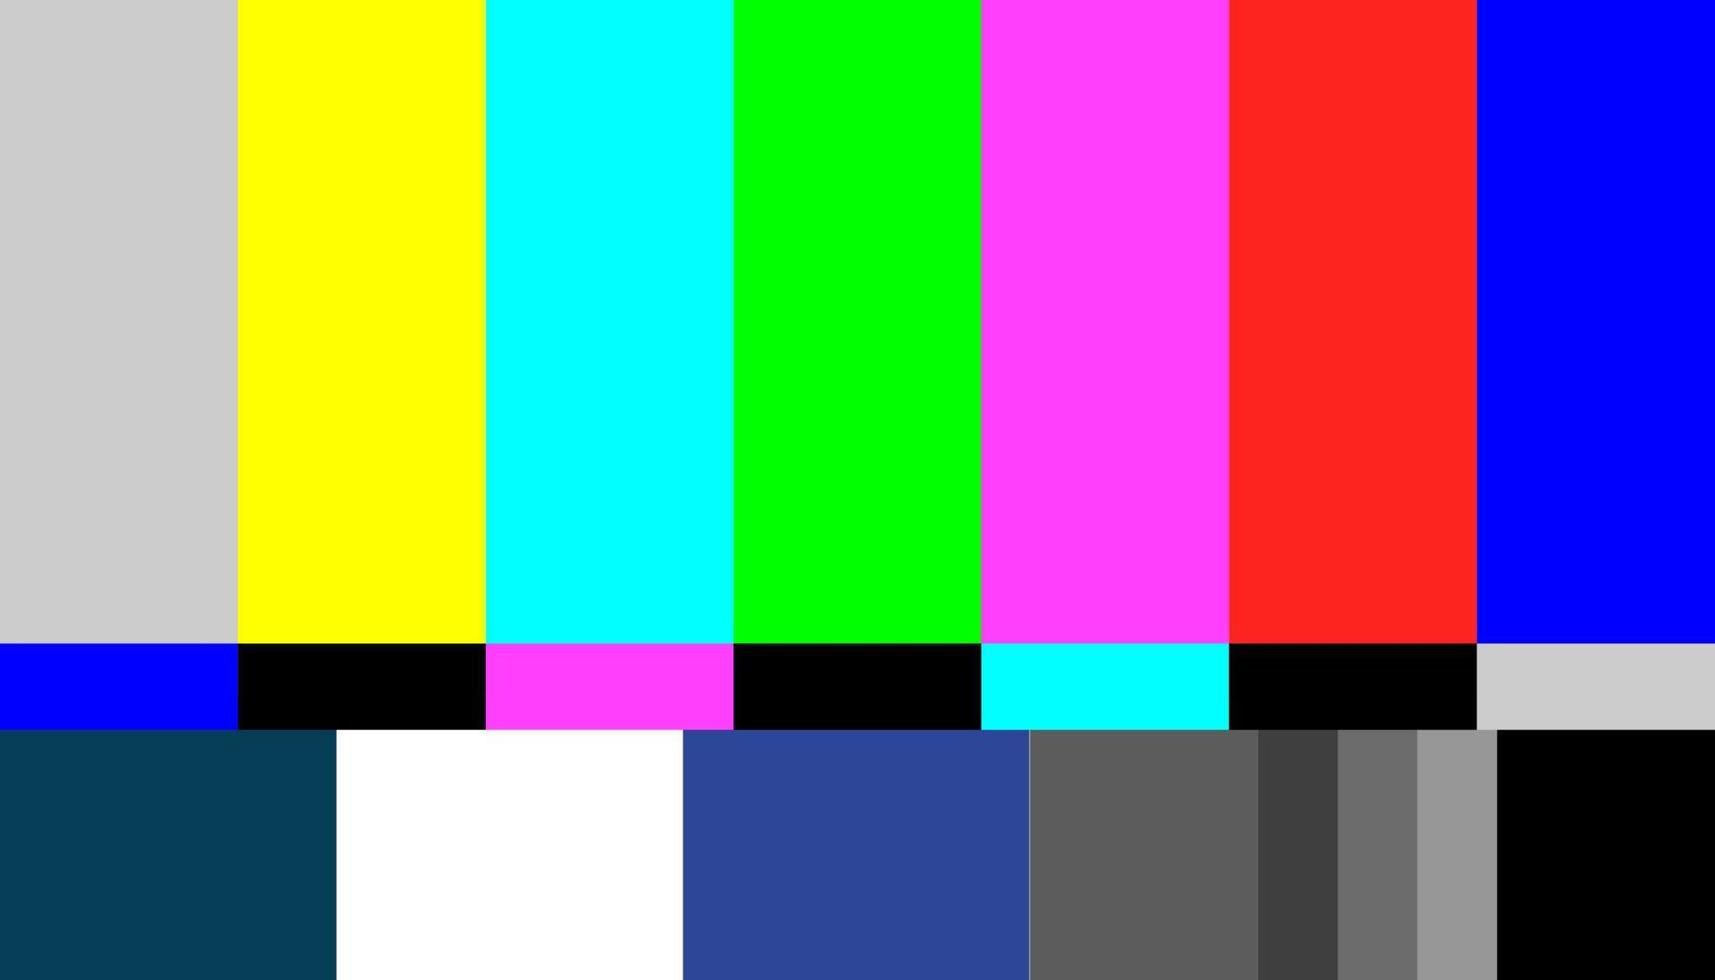 Gracioso Espacio cibernético vértice no hay señal de vector de patrón de prueba de tv. señal de barras de colores